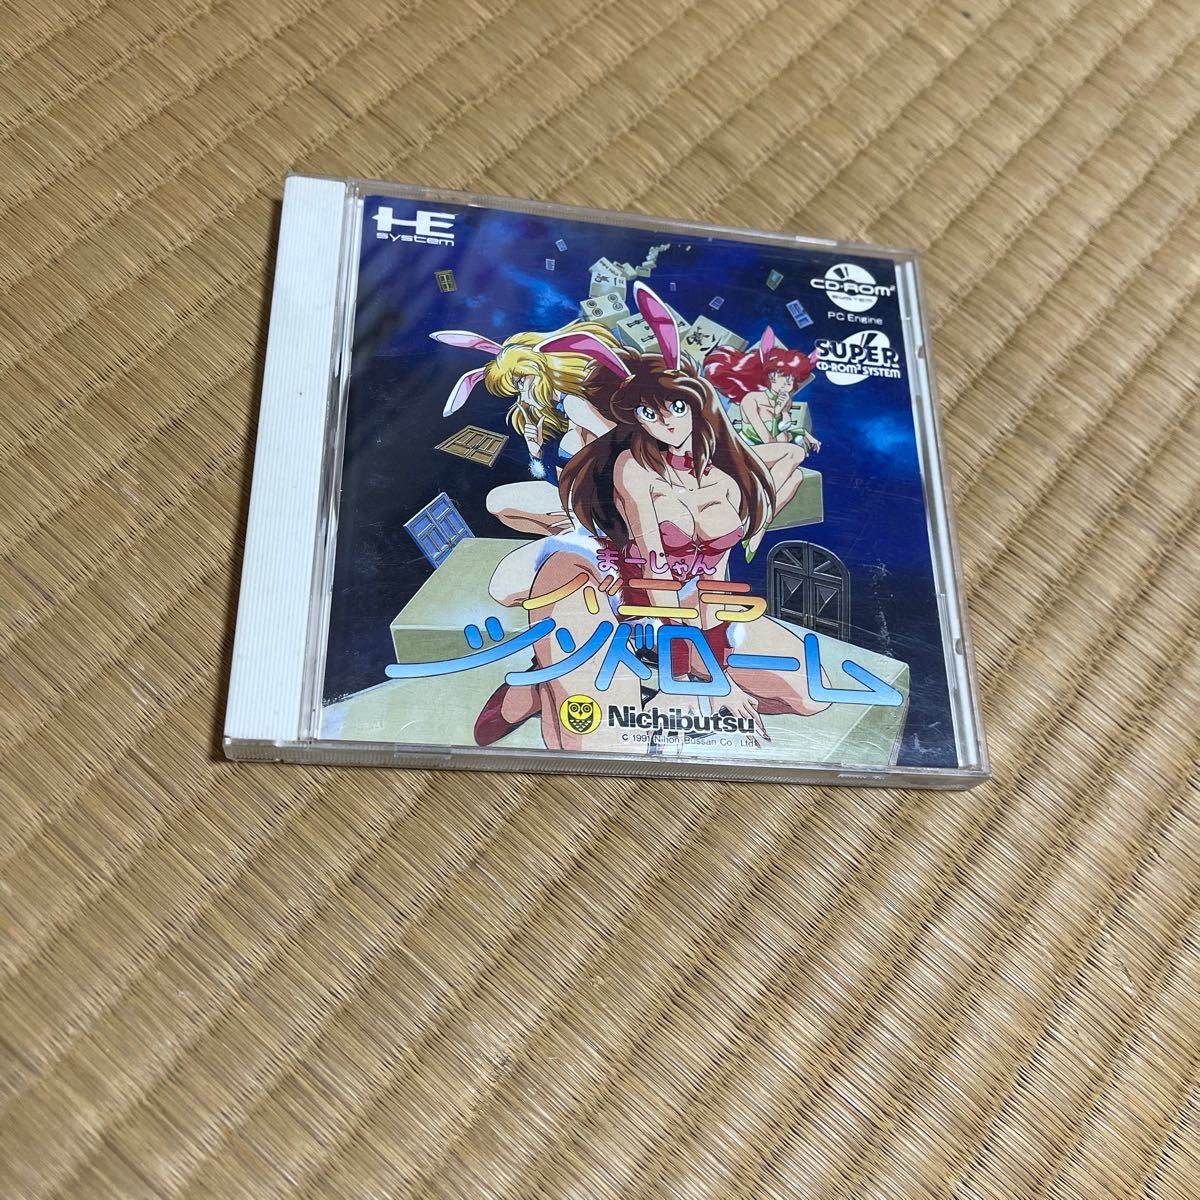 PCエンジン SUPER CD-ROM2 まーじゃんバニラシンドローム